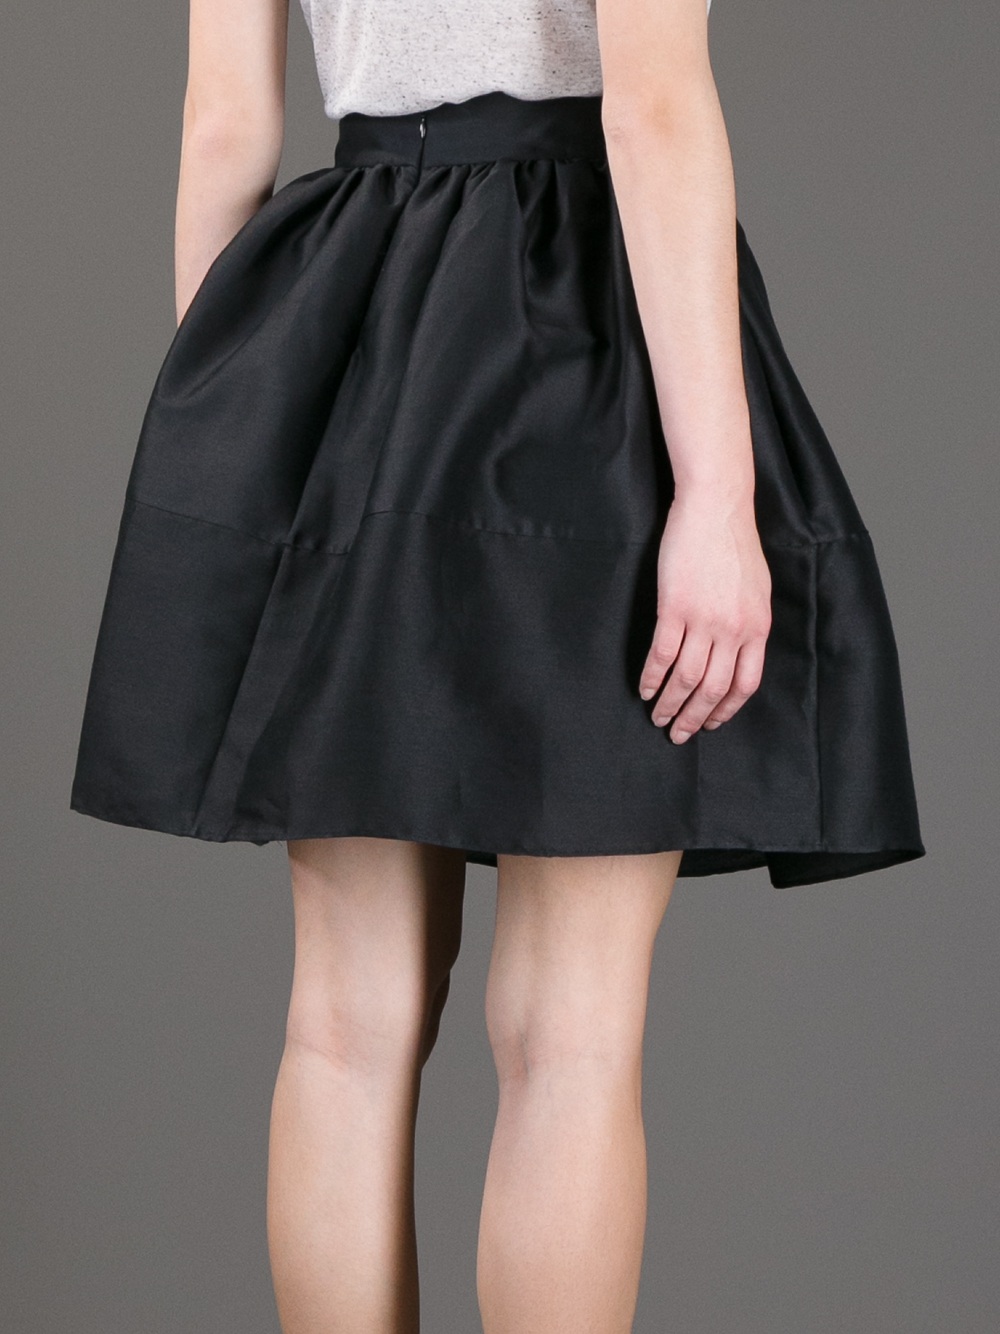 Golden Goose Deluxe Brand Flared Semi Sheer Skirt in Black - Lyst